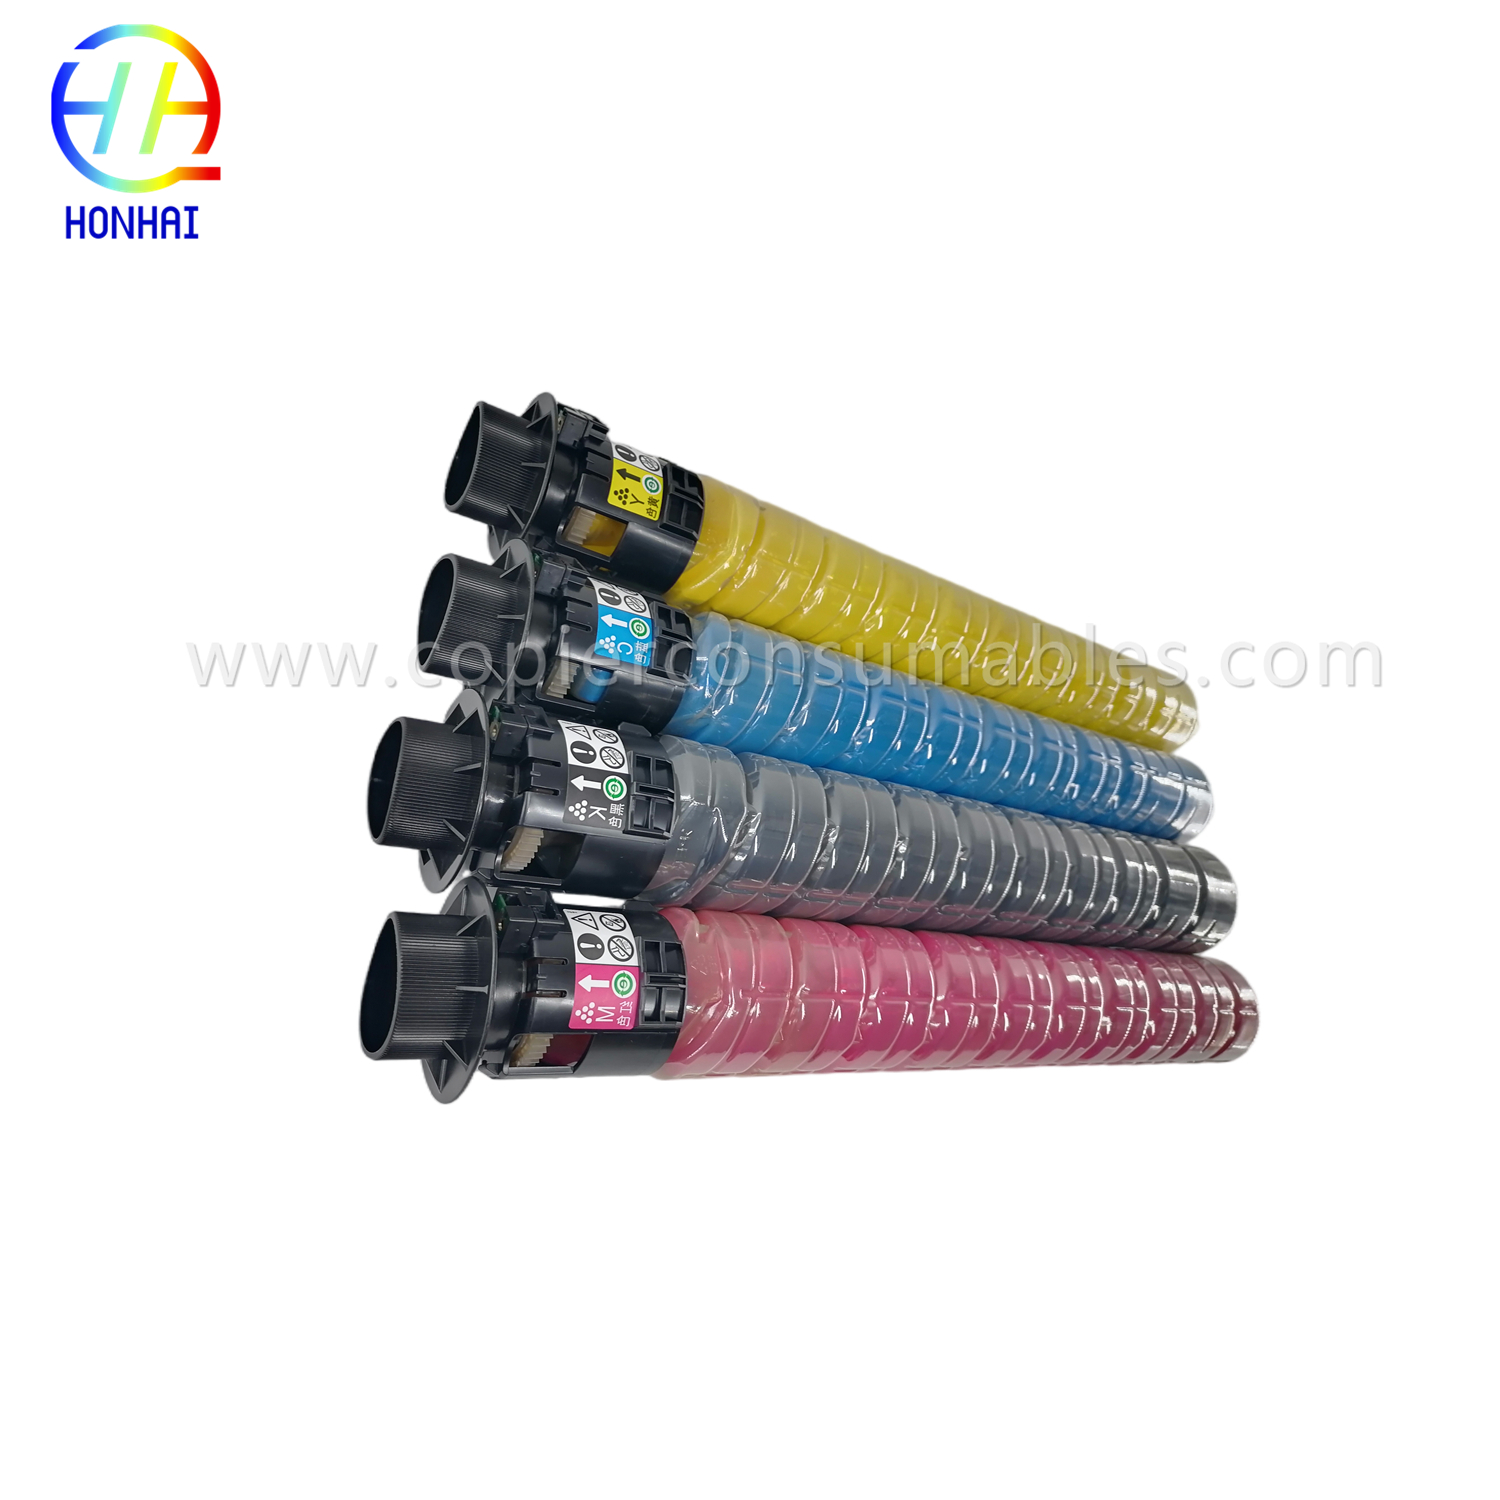 https://www.copierhonhaitech.com/toner-cartridges-set-cmyk-original-powder-for-ricoh-842257-842256-842255-842258-im-c3500-c3000-c3500-product/